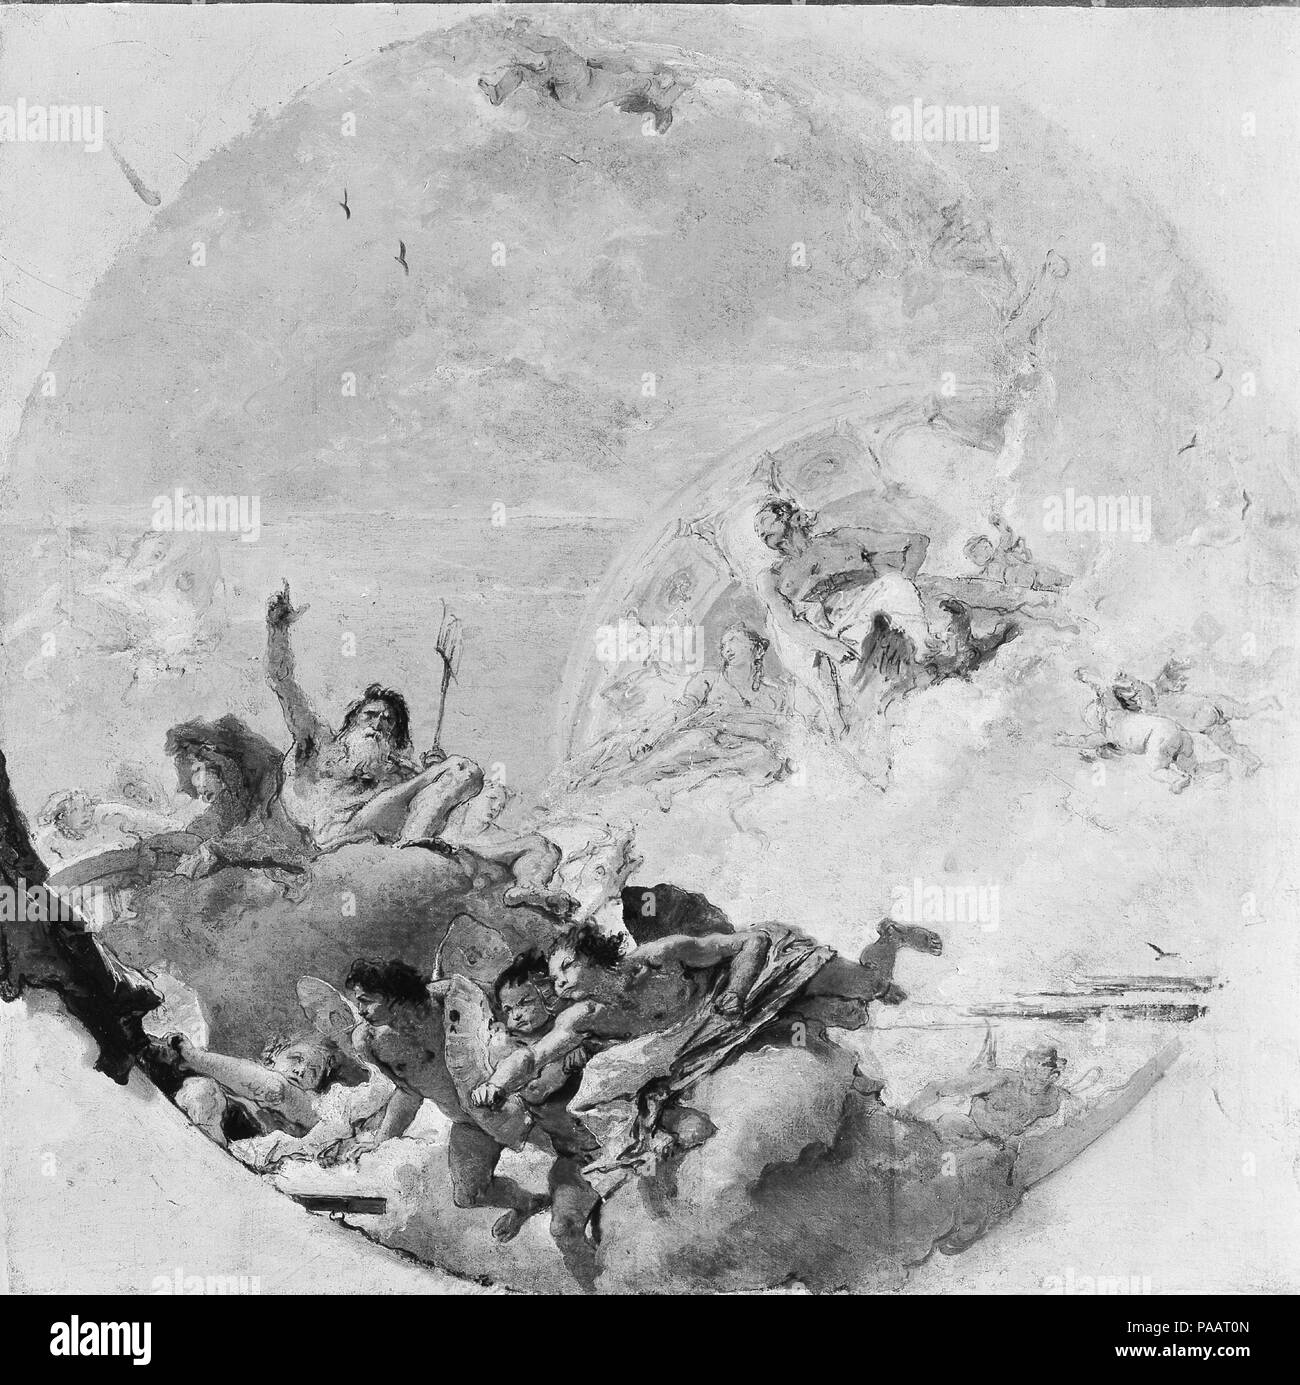 Neptun und den Winden. Künstler: Giovanni Battista Tiepolo (Italienisch, Venedig, Madrid, 1696-1770). Abmessungen: runde Oberfläche lackiert, 24 1/2 x 24 1/2 in. (62,2 x 62,2 cm). Die Skizze zeigt ein gefeierter Passage von Virgil's Aeneid <i></i> Beschreibt, wie Neptun die Winde Aeneas von schiffbruch zu speichern wieder beruhigt. Neptun, erhob seine Hand, Befehle die Winde zu unterlassen. Jupiter steht vor der Vorhalle einer kreisförmigen Tempel. In 1764-66 Tiepolo Zimmer in den Palacio Real, Madrid eingerichtet, mit einer Apotheose des Aeneas; die Skizze zu diesem Projekt verknüpft werden. Museum: Metropolitan Museum der Kunst, Stockfoto